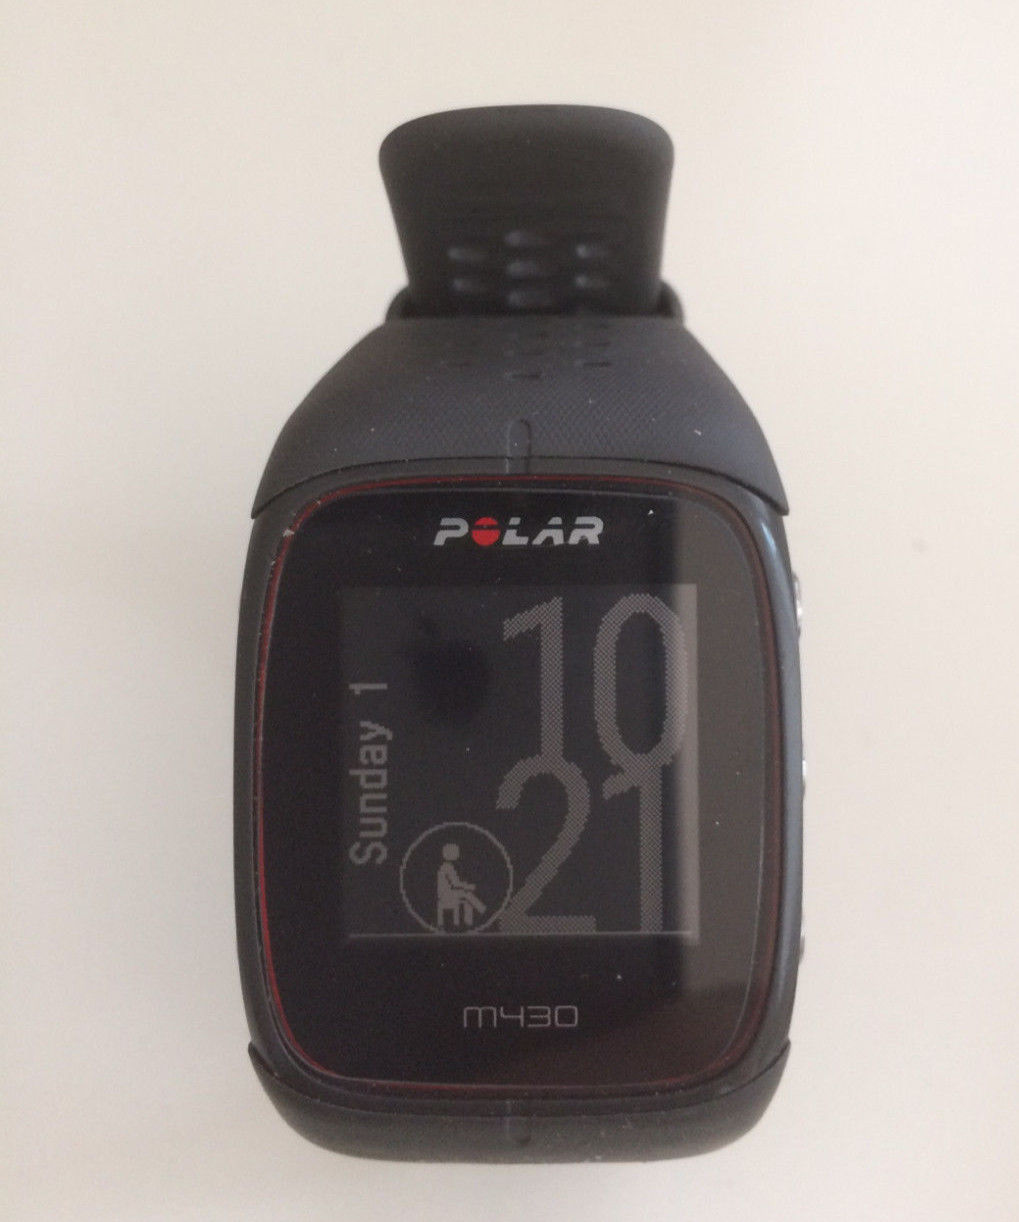 Polar M430 (schwarz) GPS Sportuhr mit Pulsmessung am Handgelenk ***gebraucht***